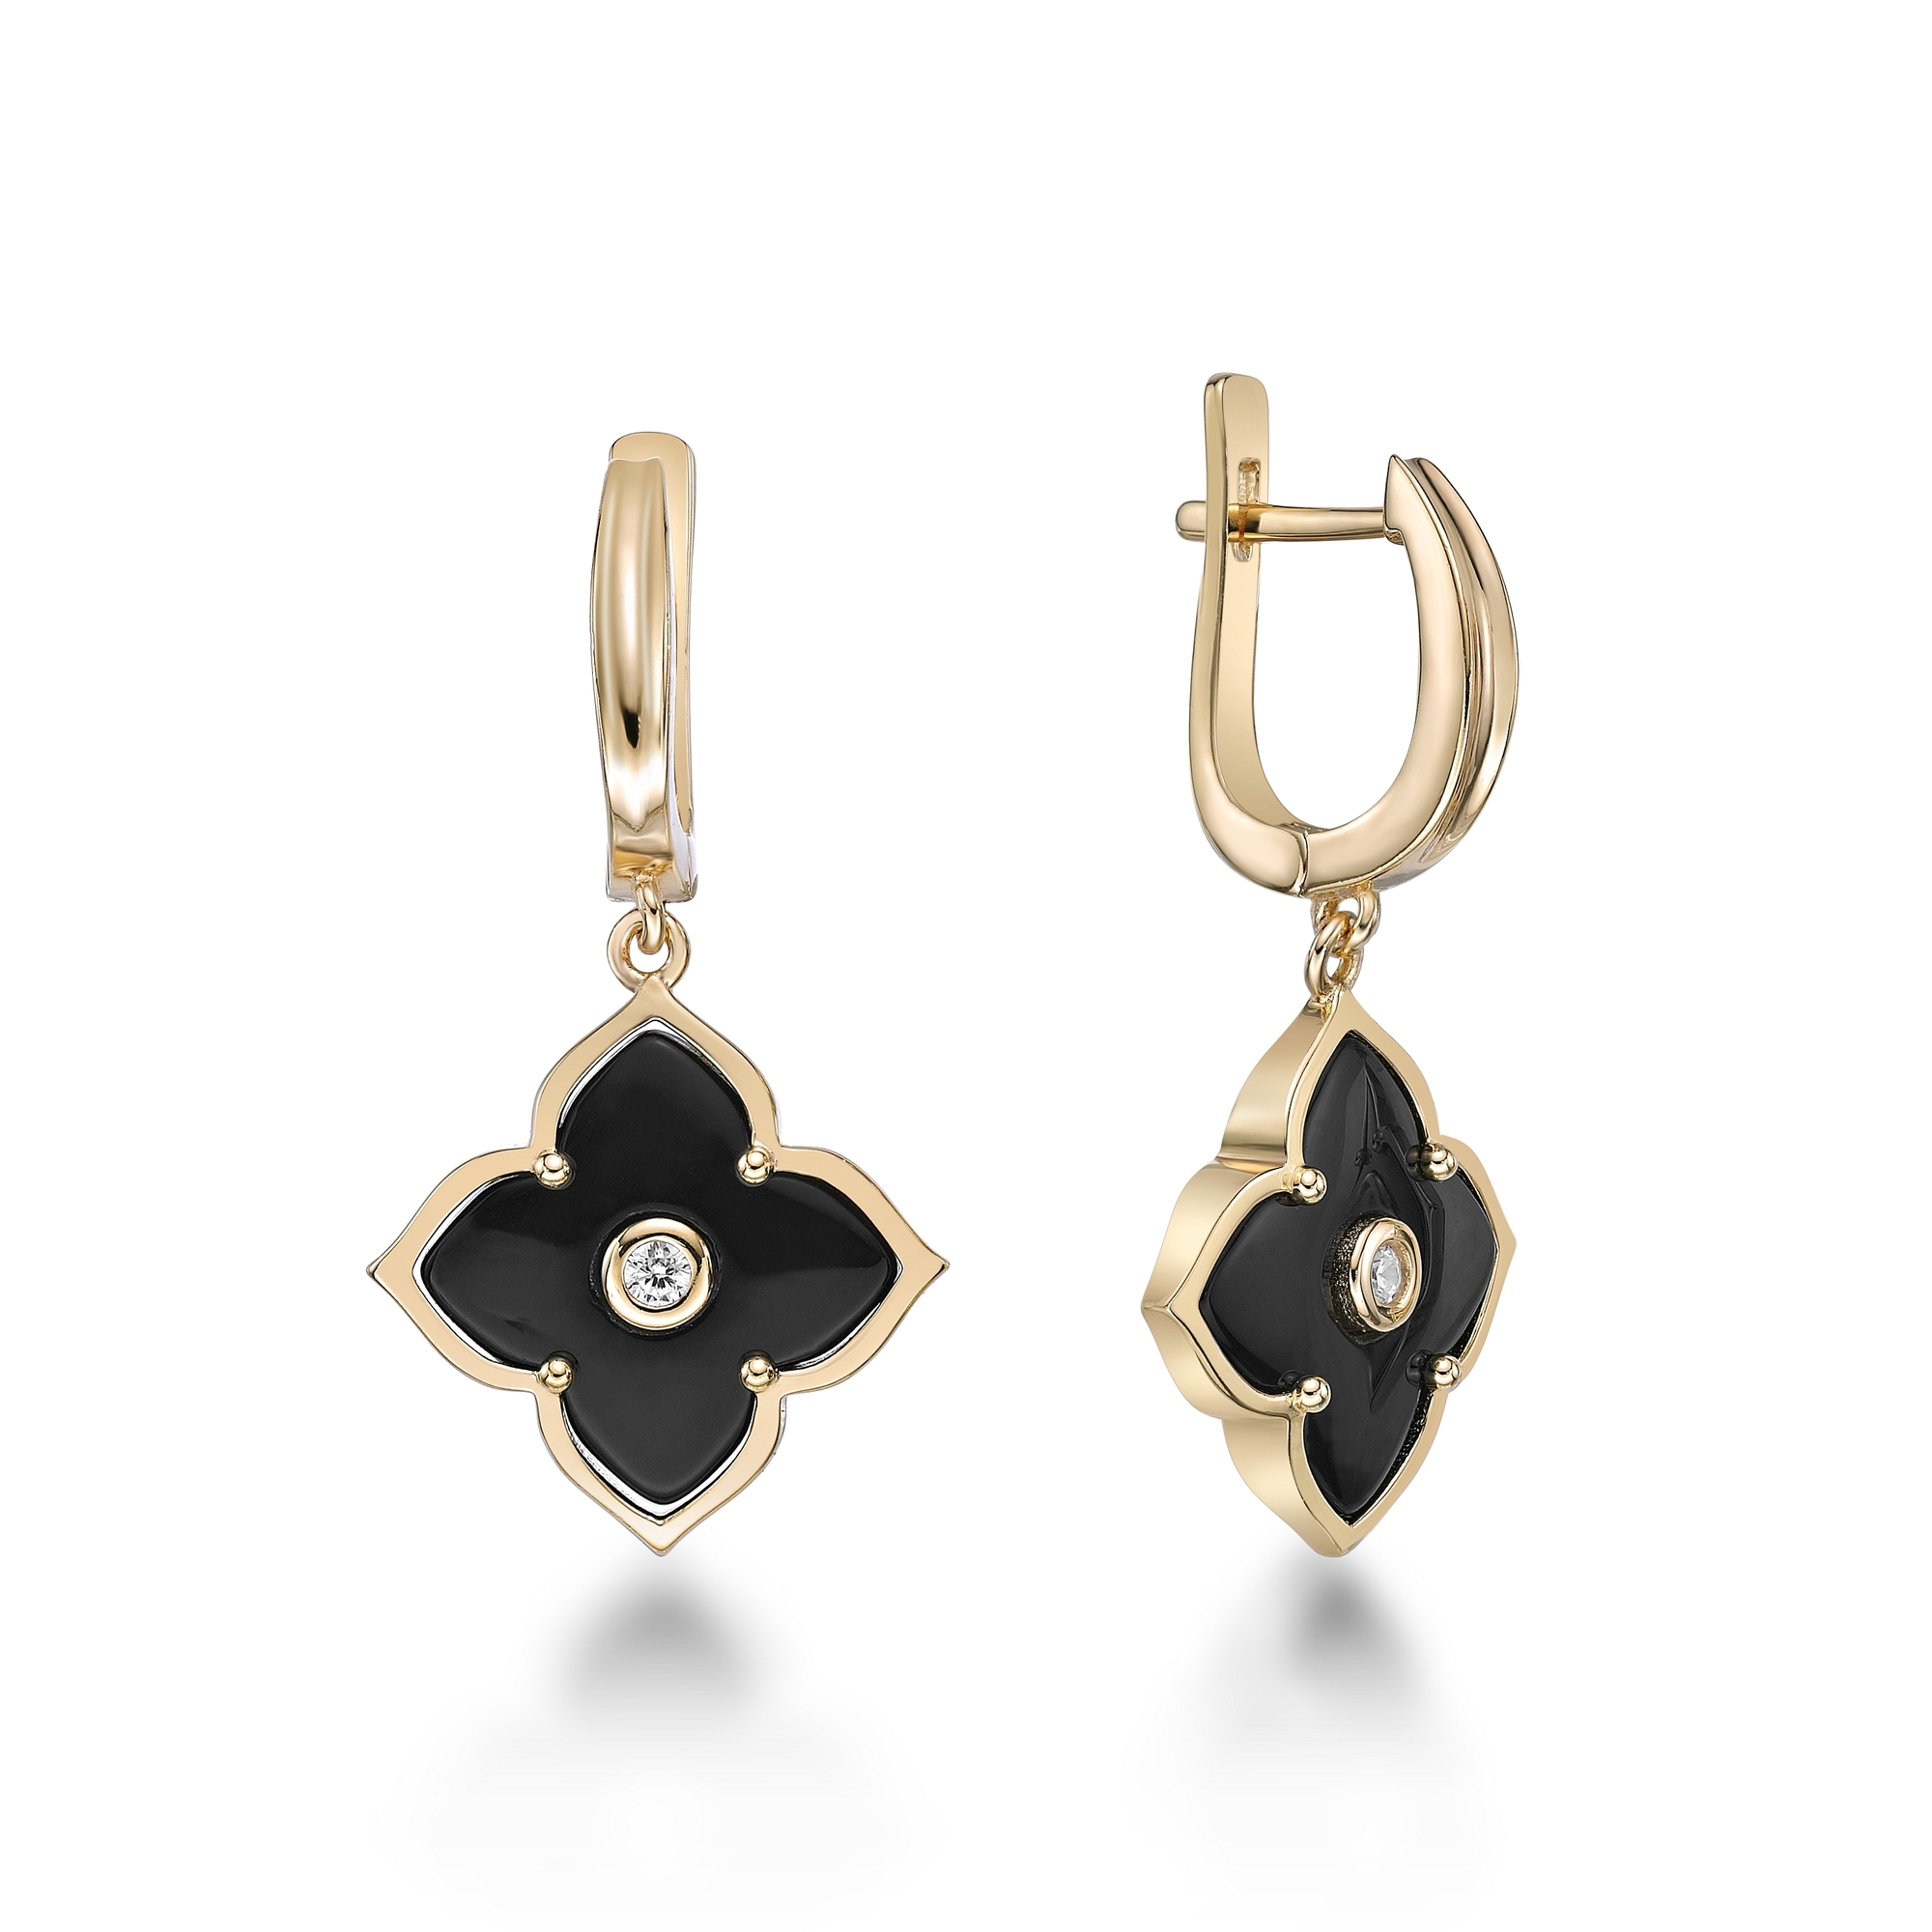 51505-earrings-fashion-jewelry-sterling-silver-51505-2.jpg